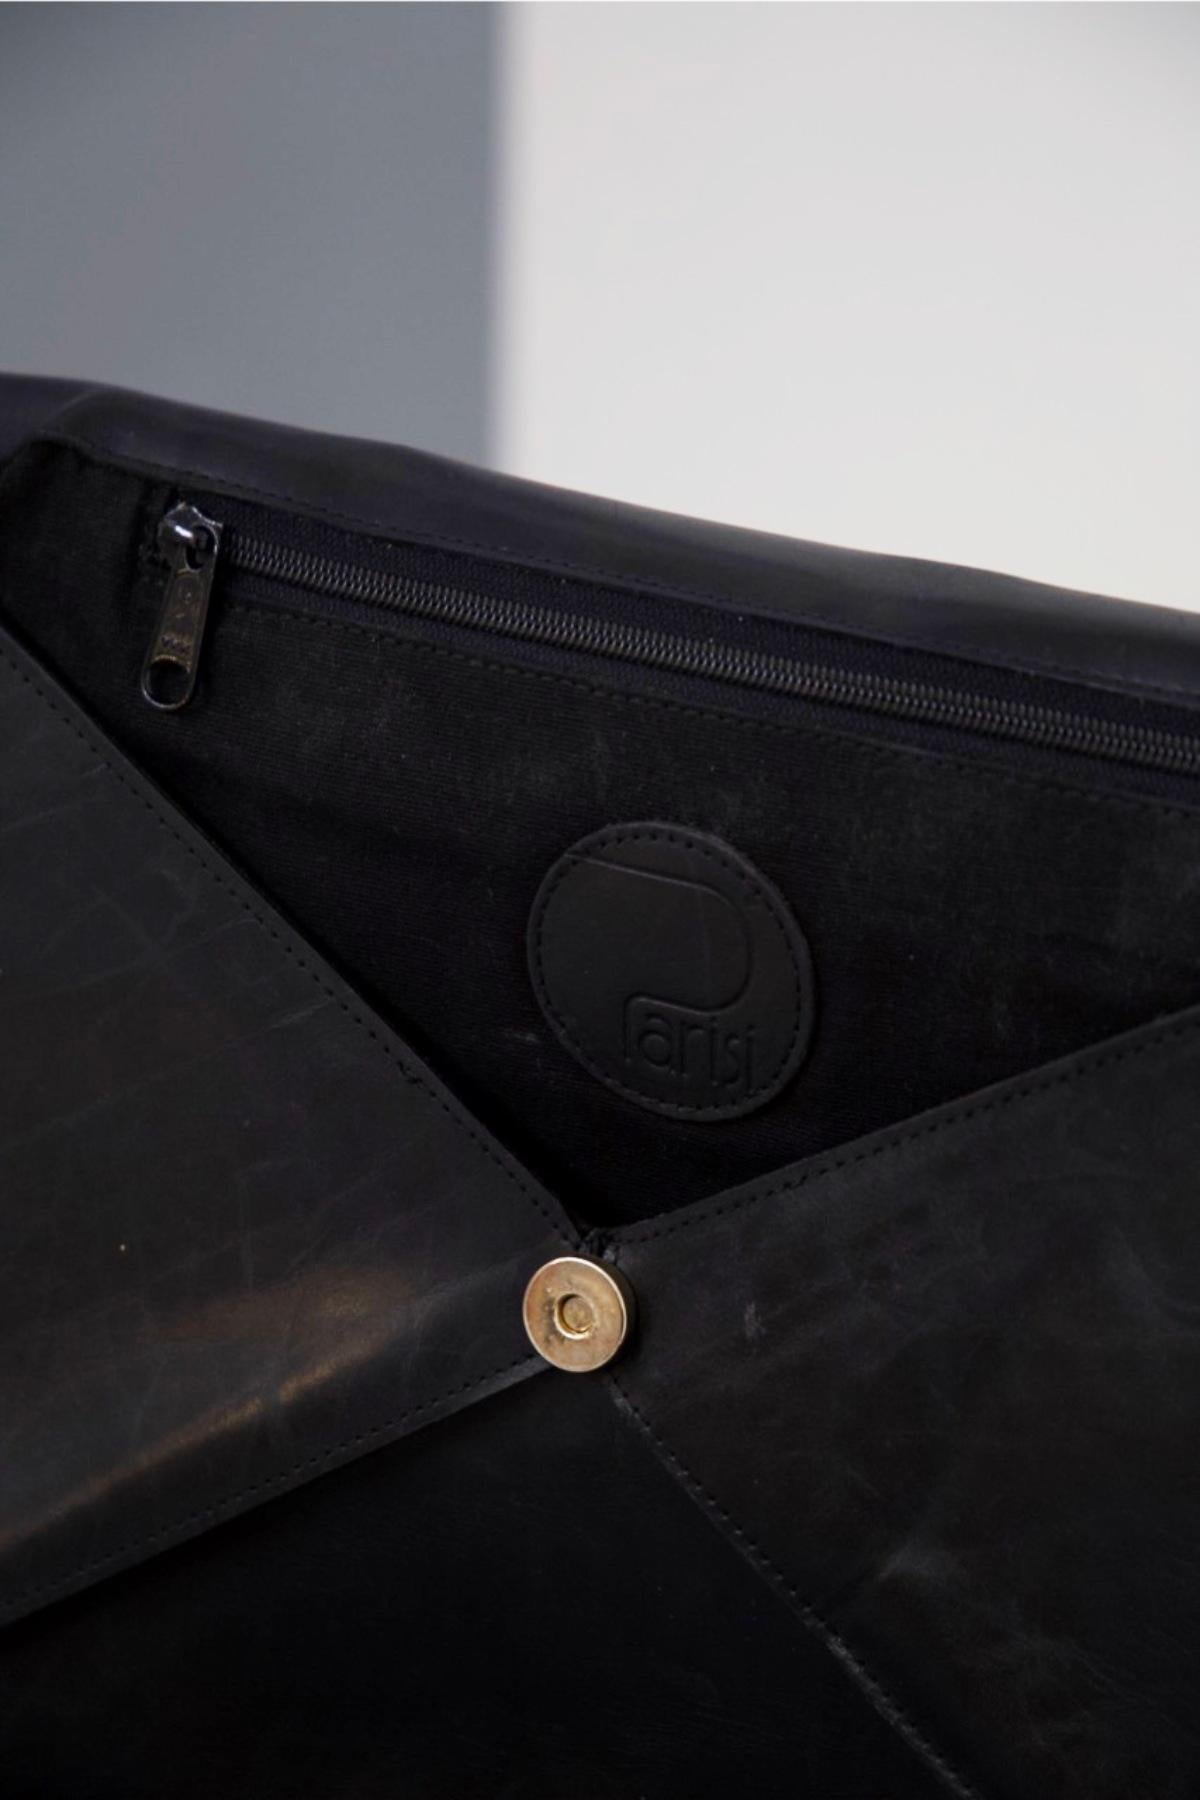 Schwarze Vintage-Clutch-Tasche aus Leder, entworfen von Parisi in den 1990er Jahren, hergestellt in Italien.
Die Clutch-Tasche ist ganz aus schwarzem Leder, Clutch-Stil, rechteckige Form mit Dreieck Öffnung, sehr charmant.
Die Tasche öffnet sich